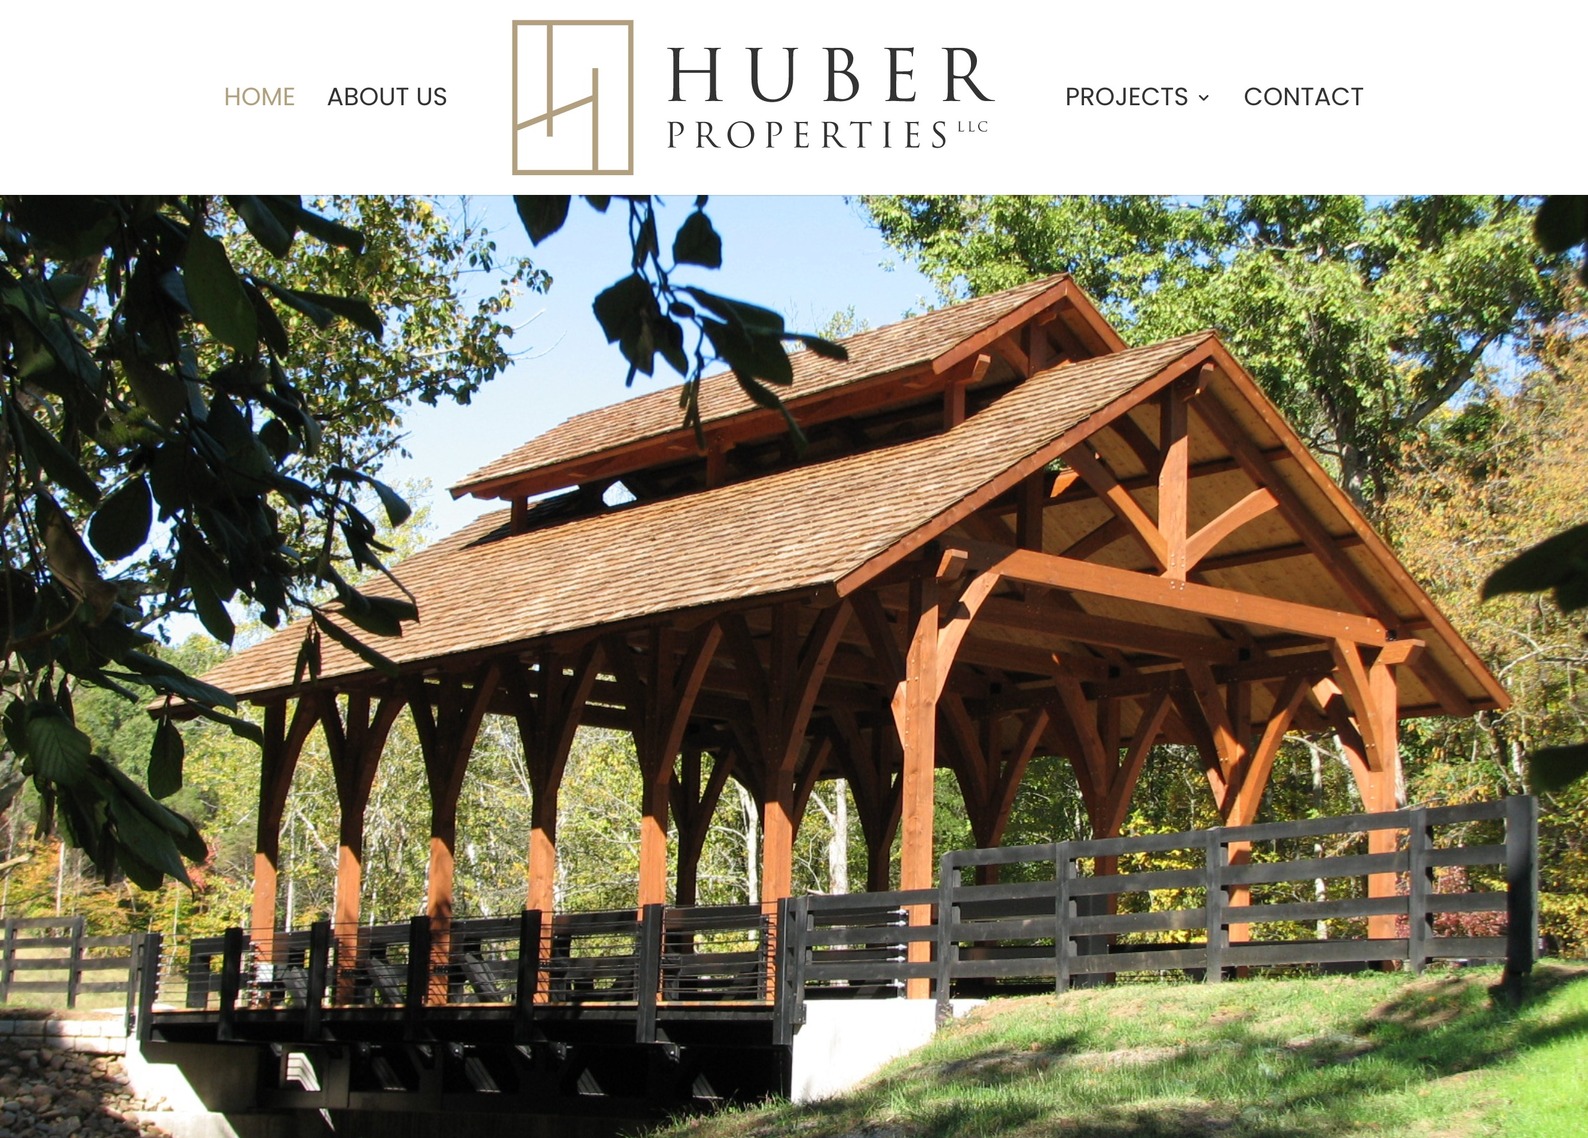 Huber Properties